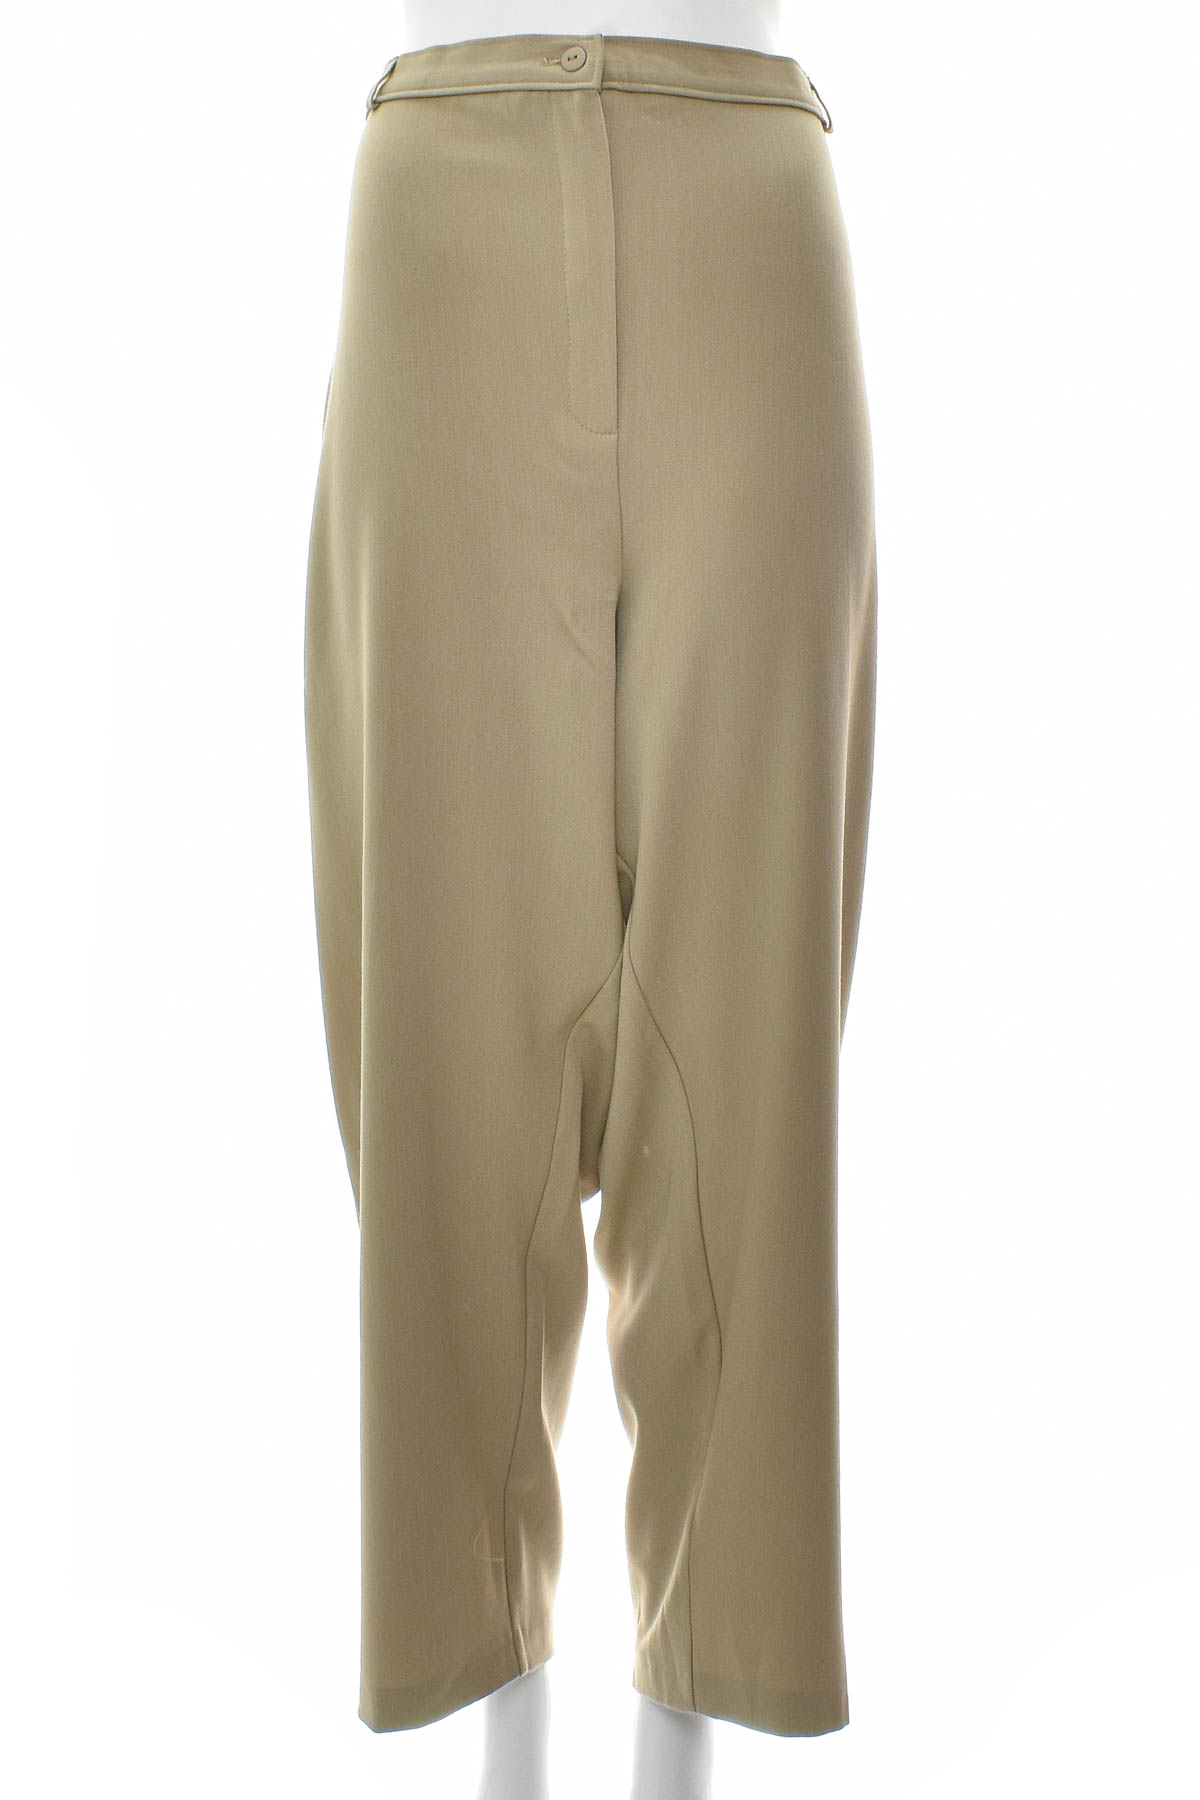 Women's trousers - Slimma - 0